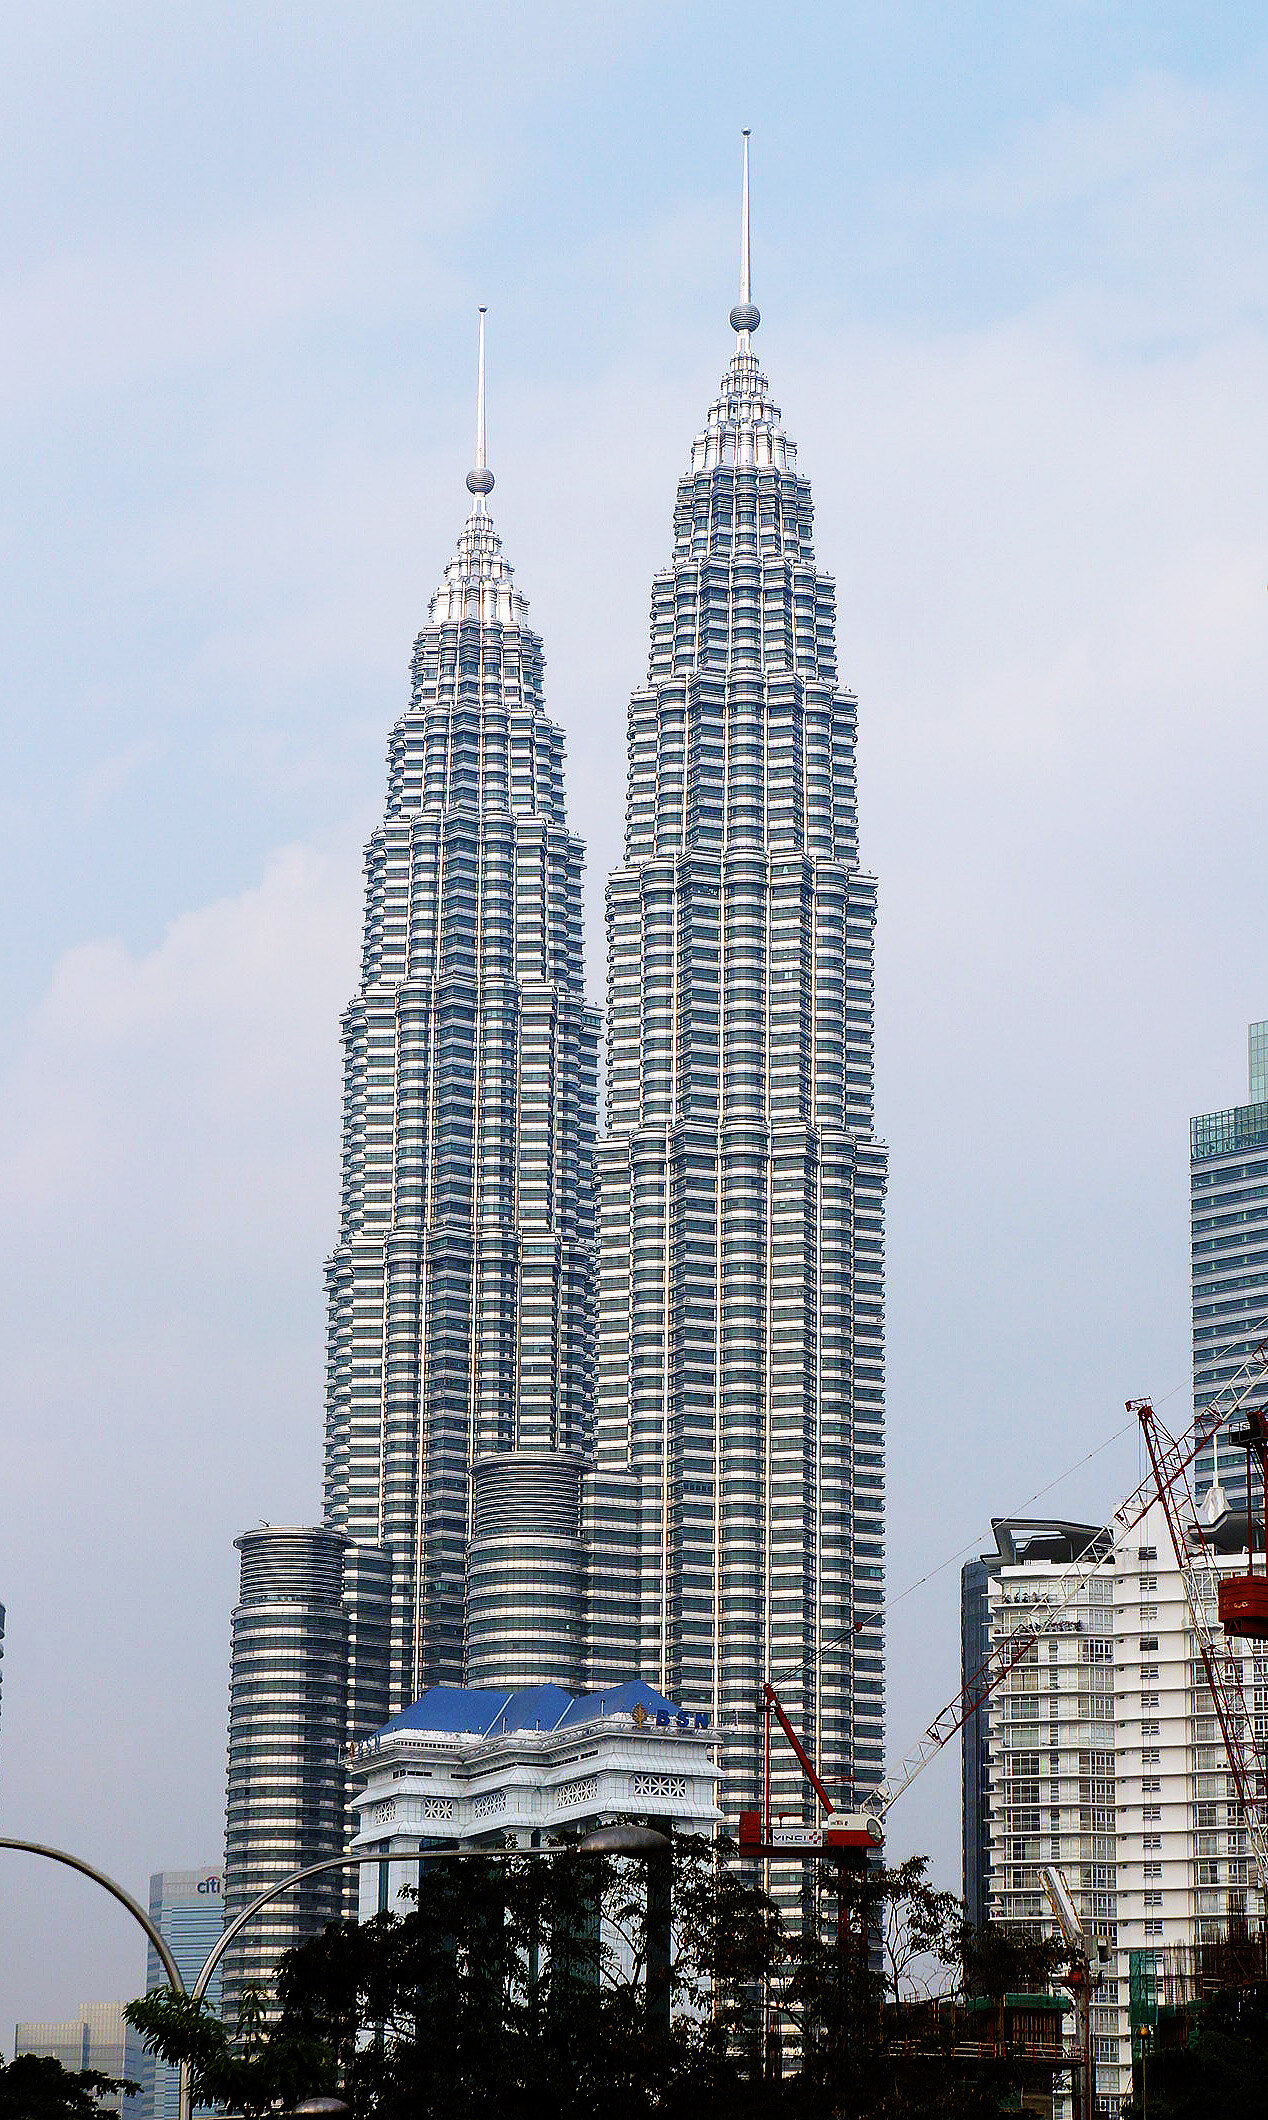 【携程攻略】吉隆坡双子塔景点,石油公司的双子塔建筑，可上84层塔顶，一览吉隆坡景色。其中的商场物…